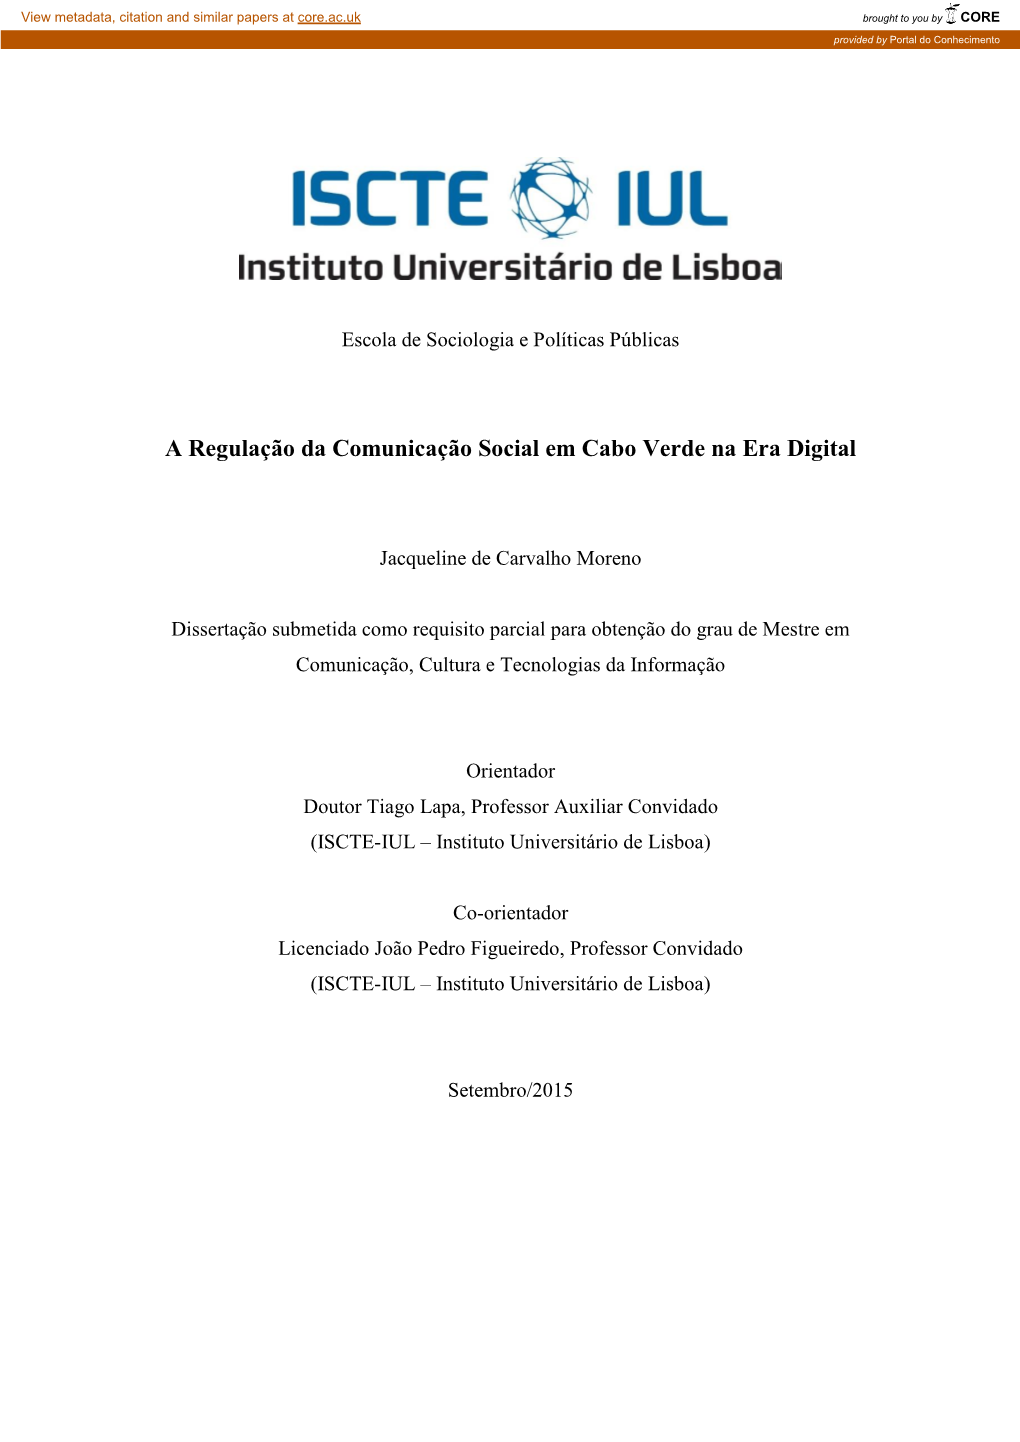 A Regulação Da Comunicação Social Em Cabo Verde Na Era Digital